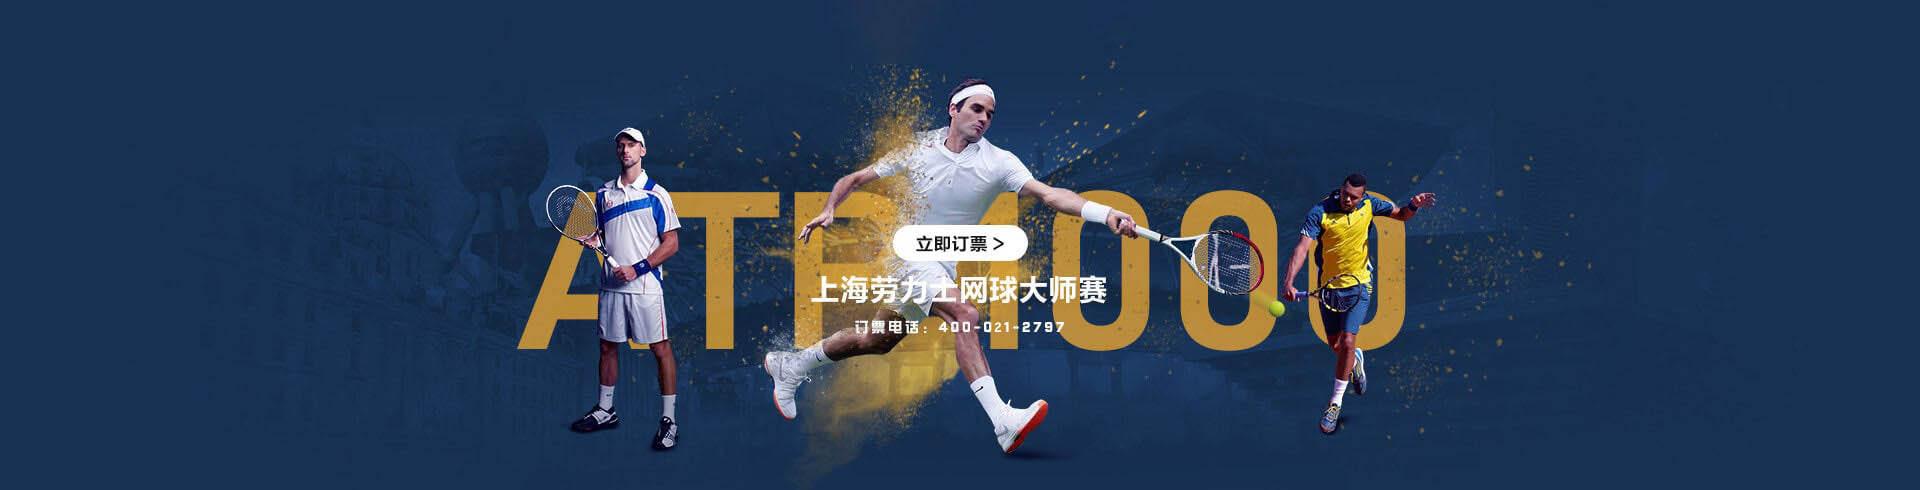 2021年上海ATP000劳力士网球大师赛官方订票